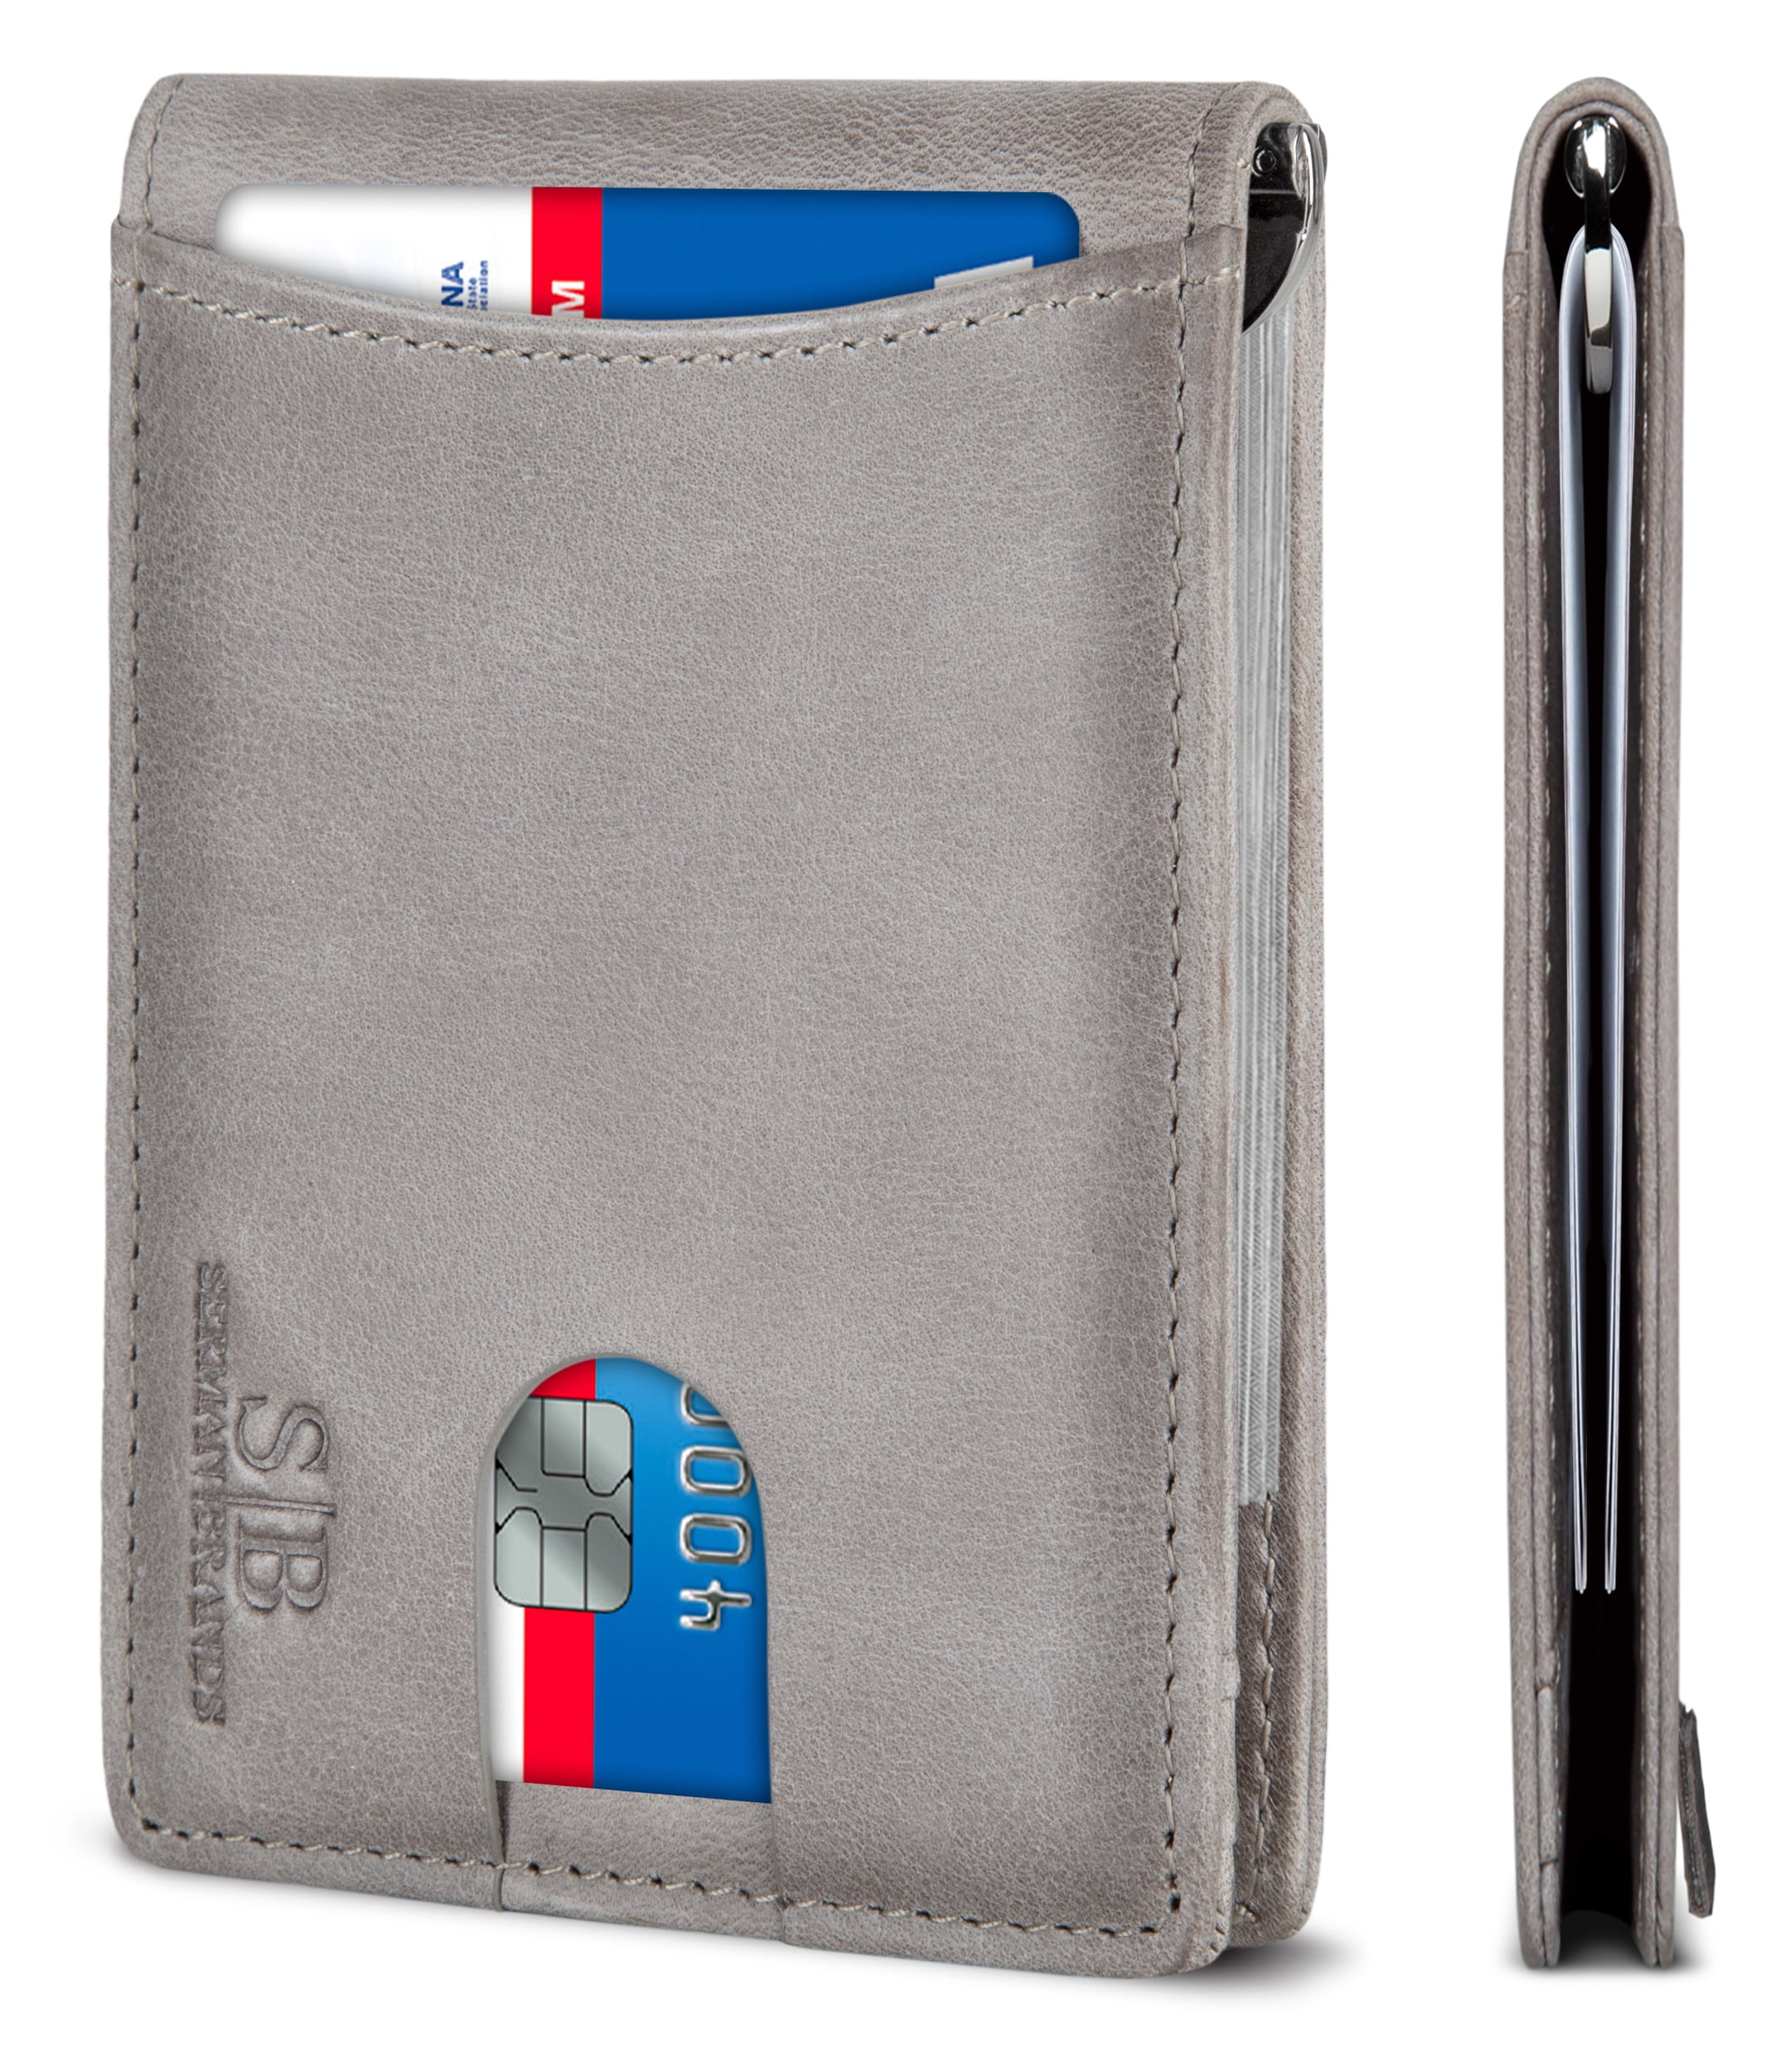 Pocket organizer wallet - keep your credit cards, cash, pocket